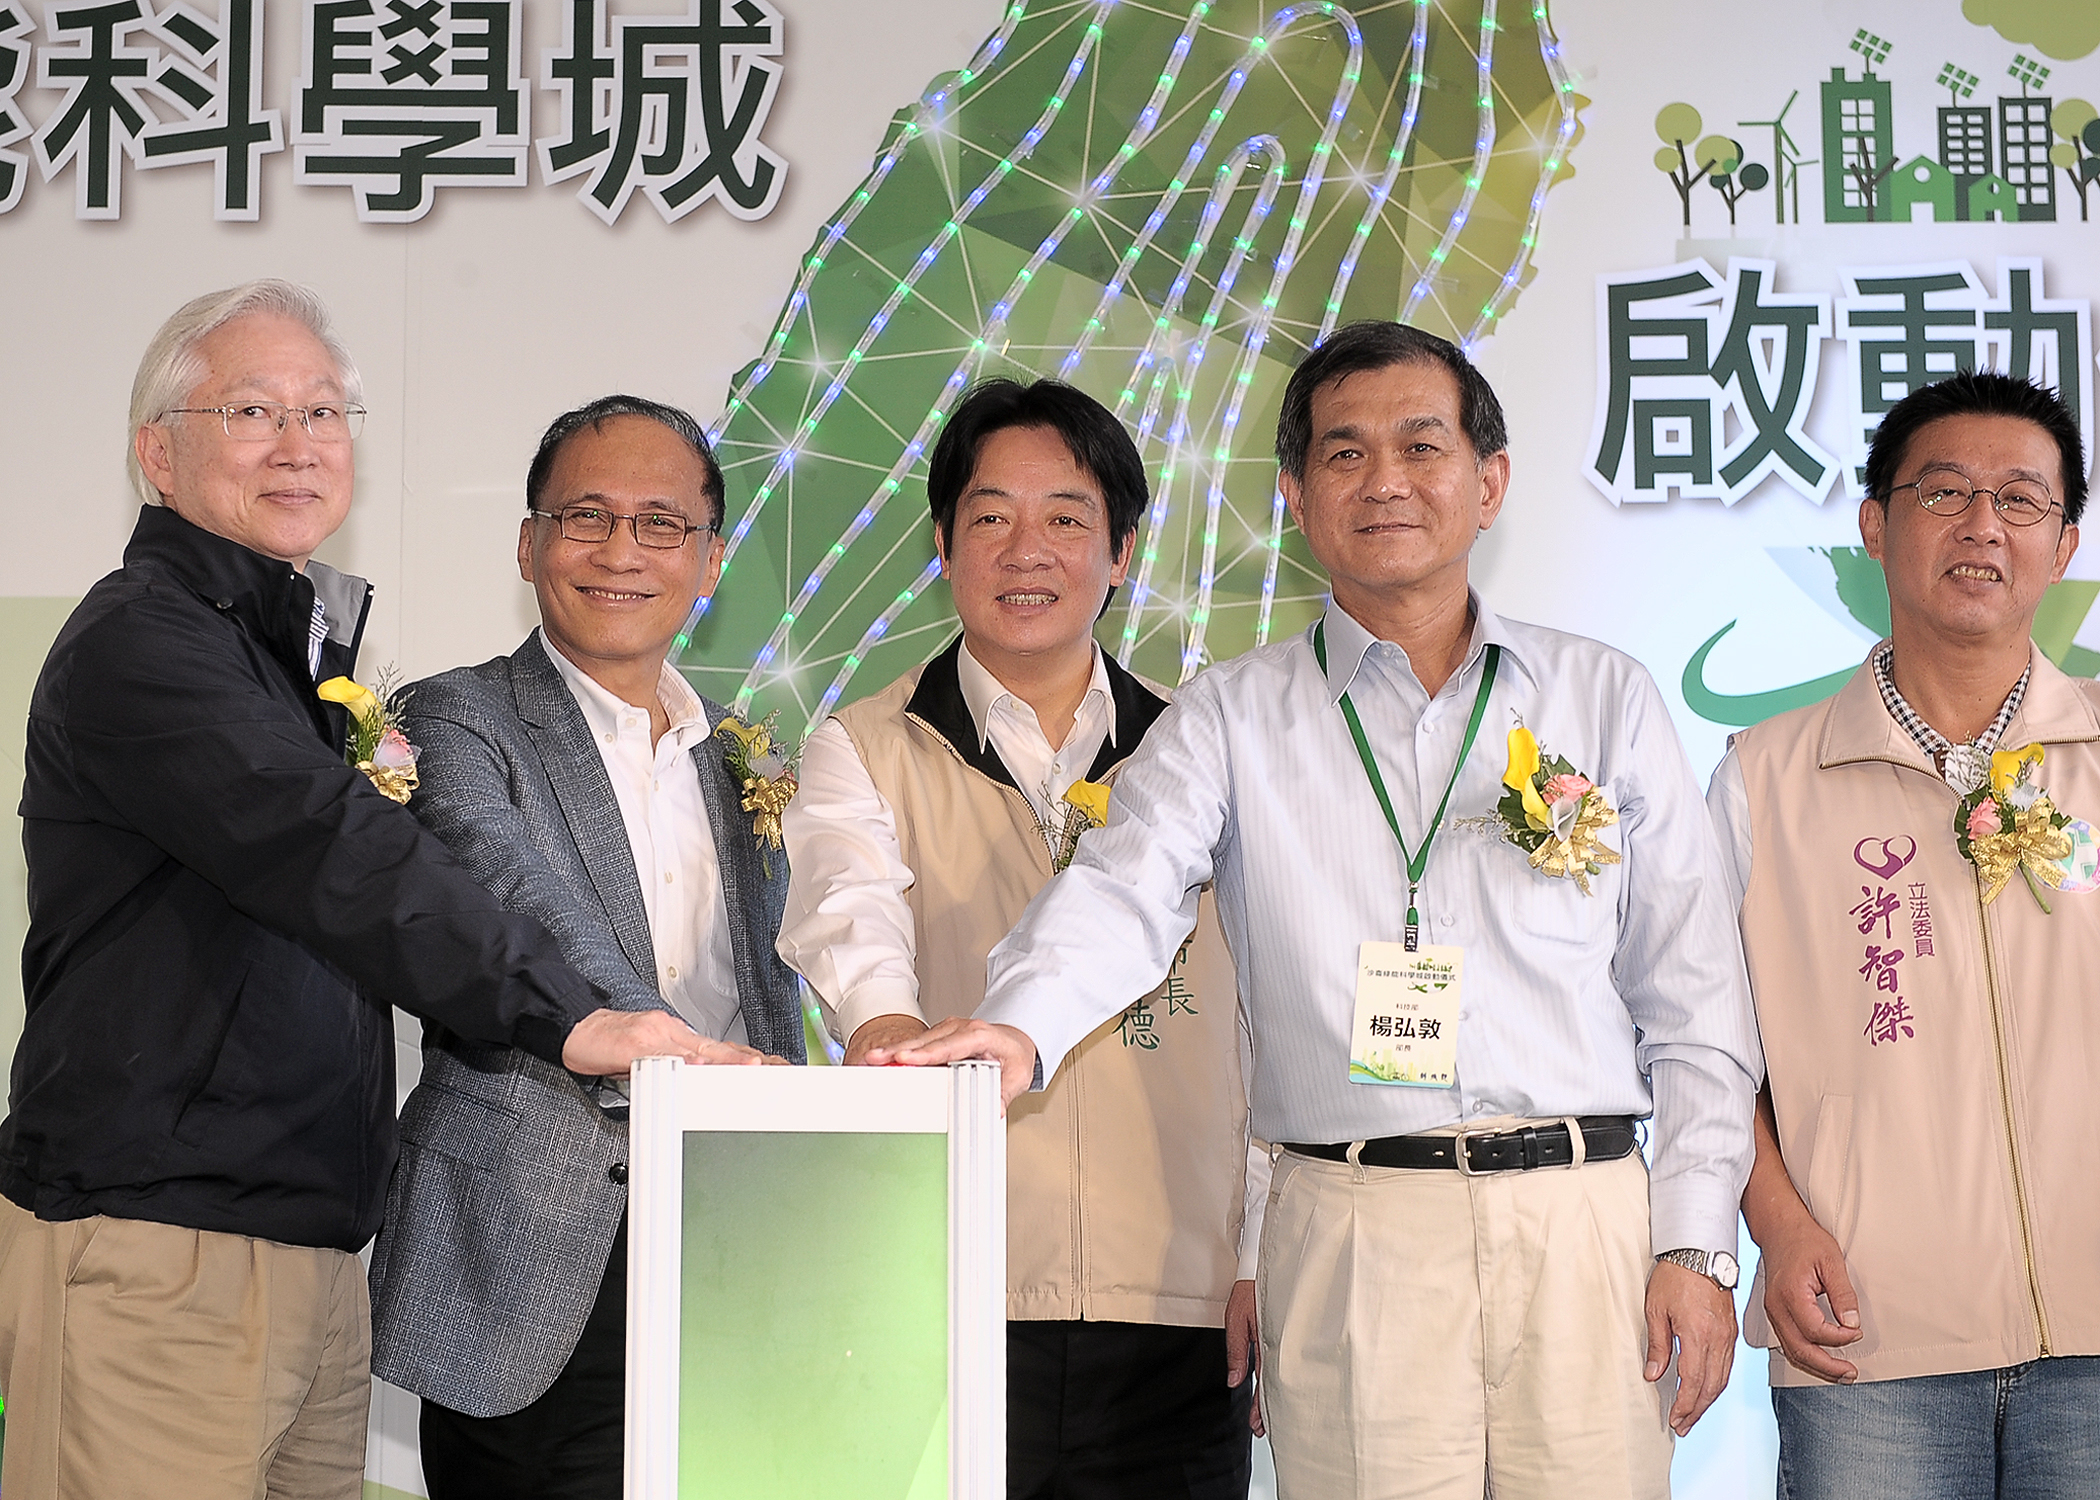 發展臺灣綠能產業聚落經濟 沙崙綠能科學城正式啟動